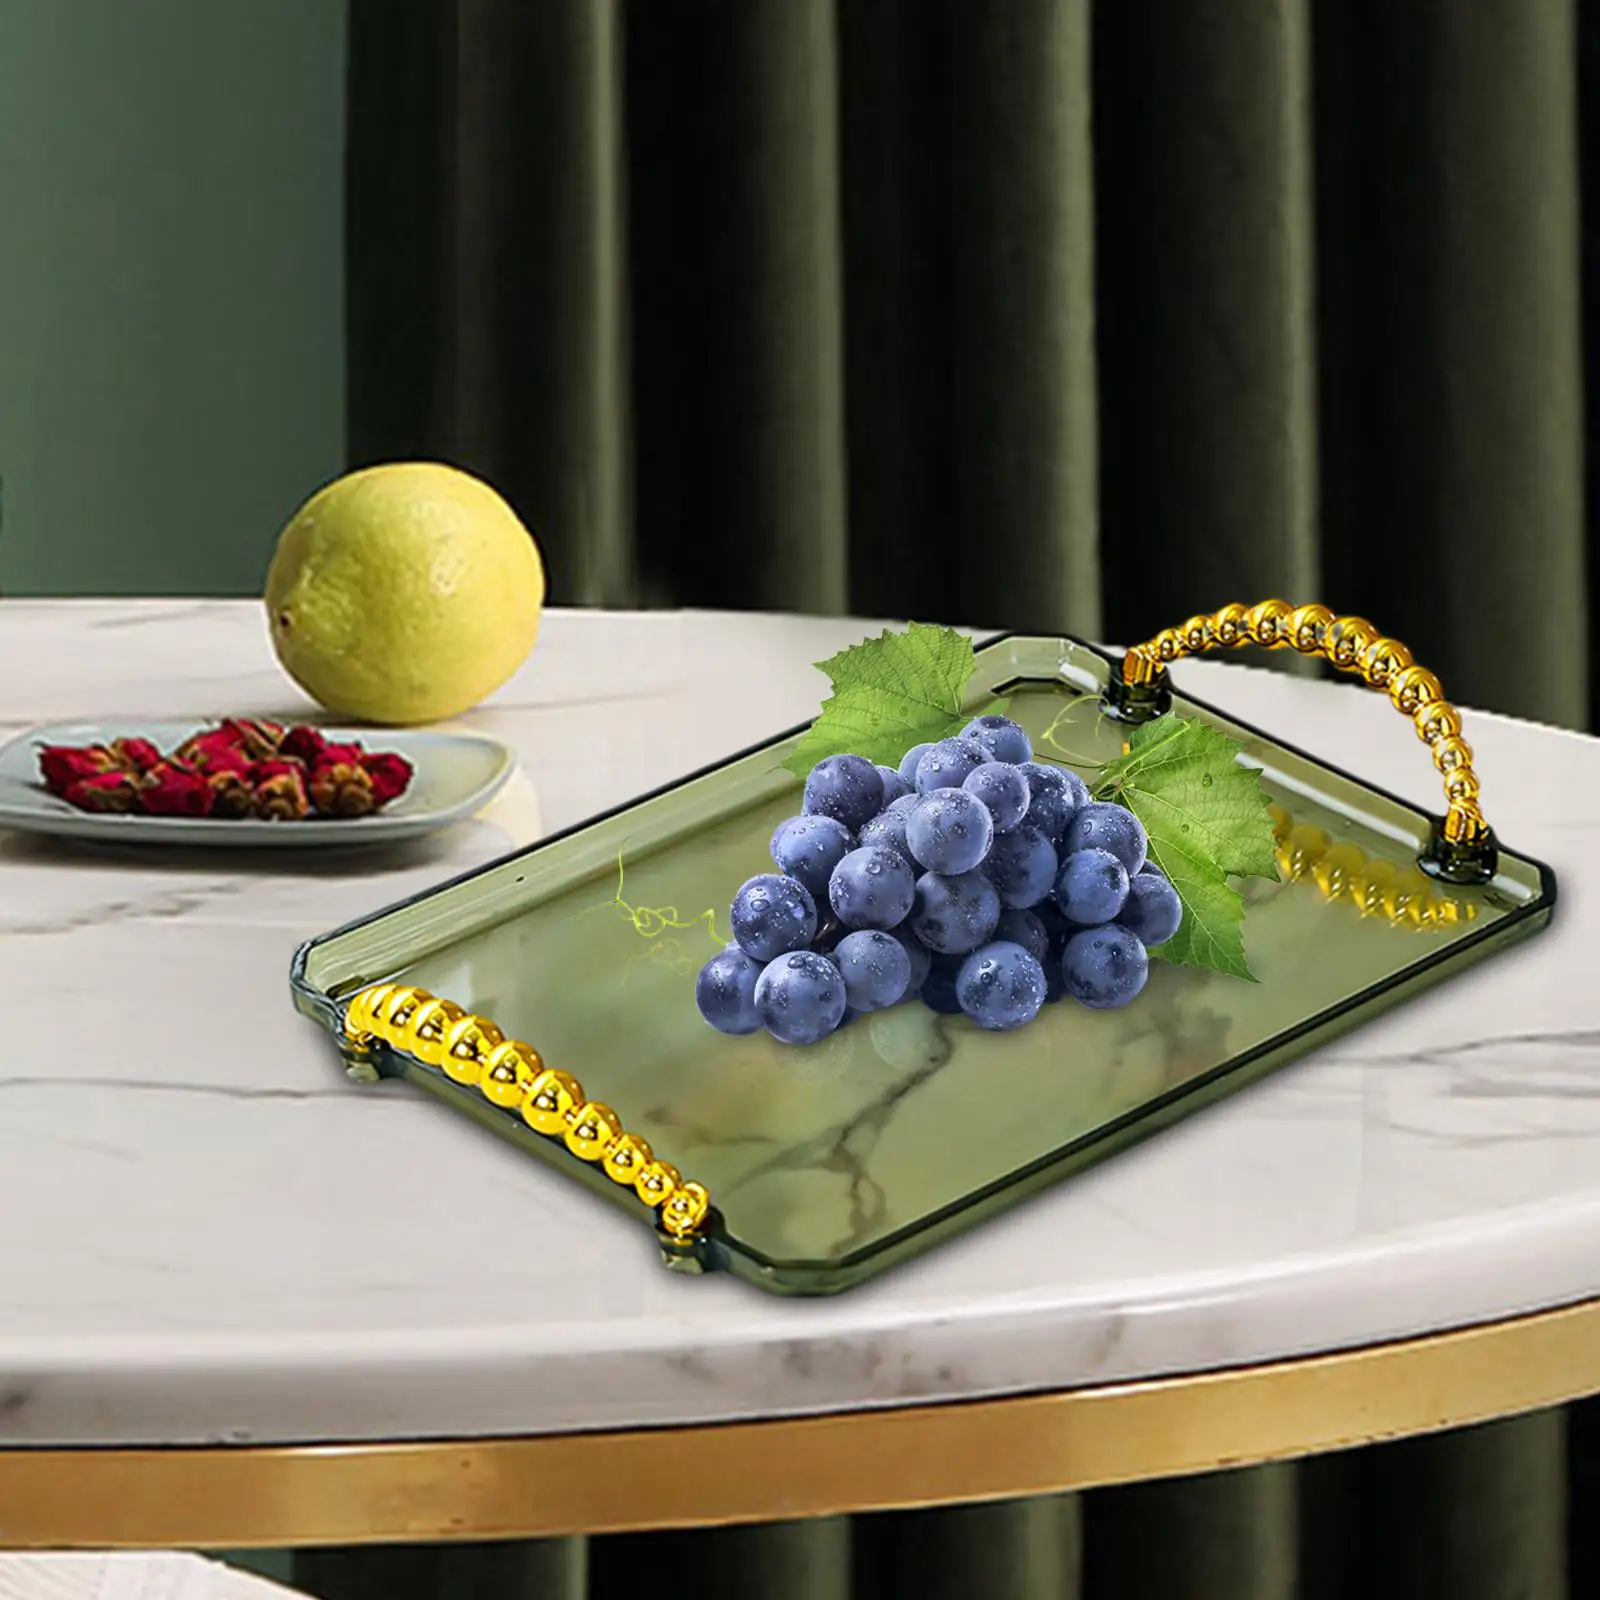 Rectangular Serving Platters Food Snack Tray for Dresser Living Room Bedroom